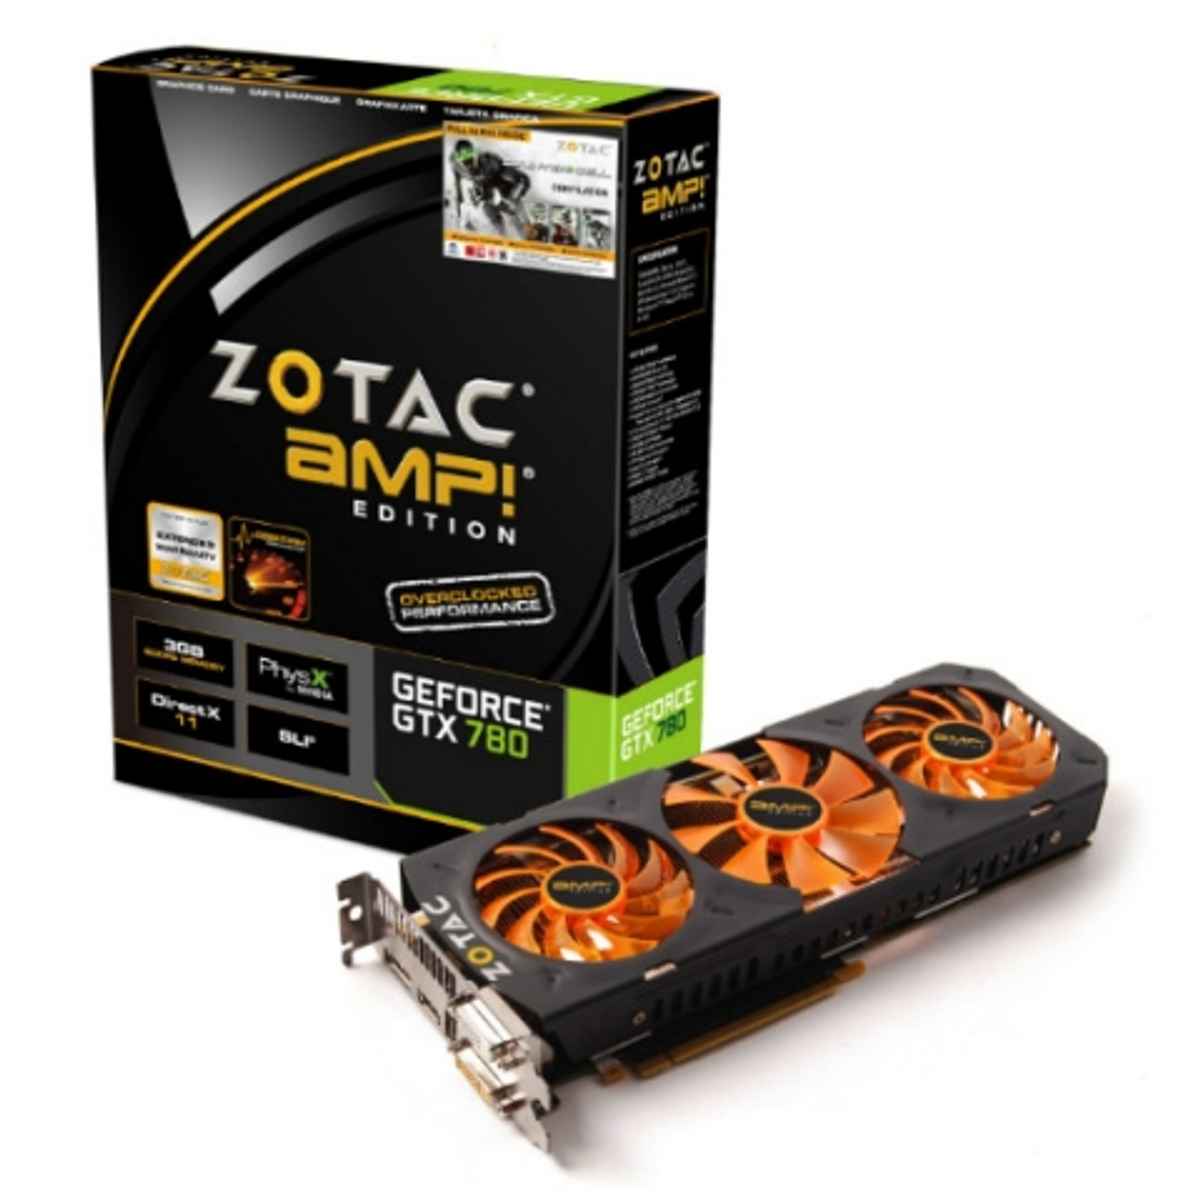 Zotac Gtx 780 Amp Review